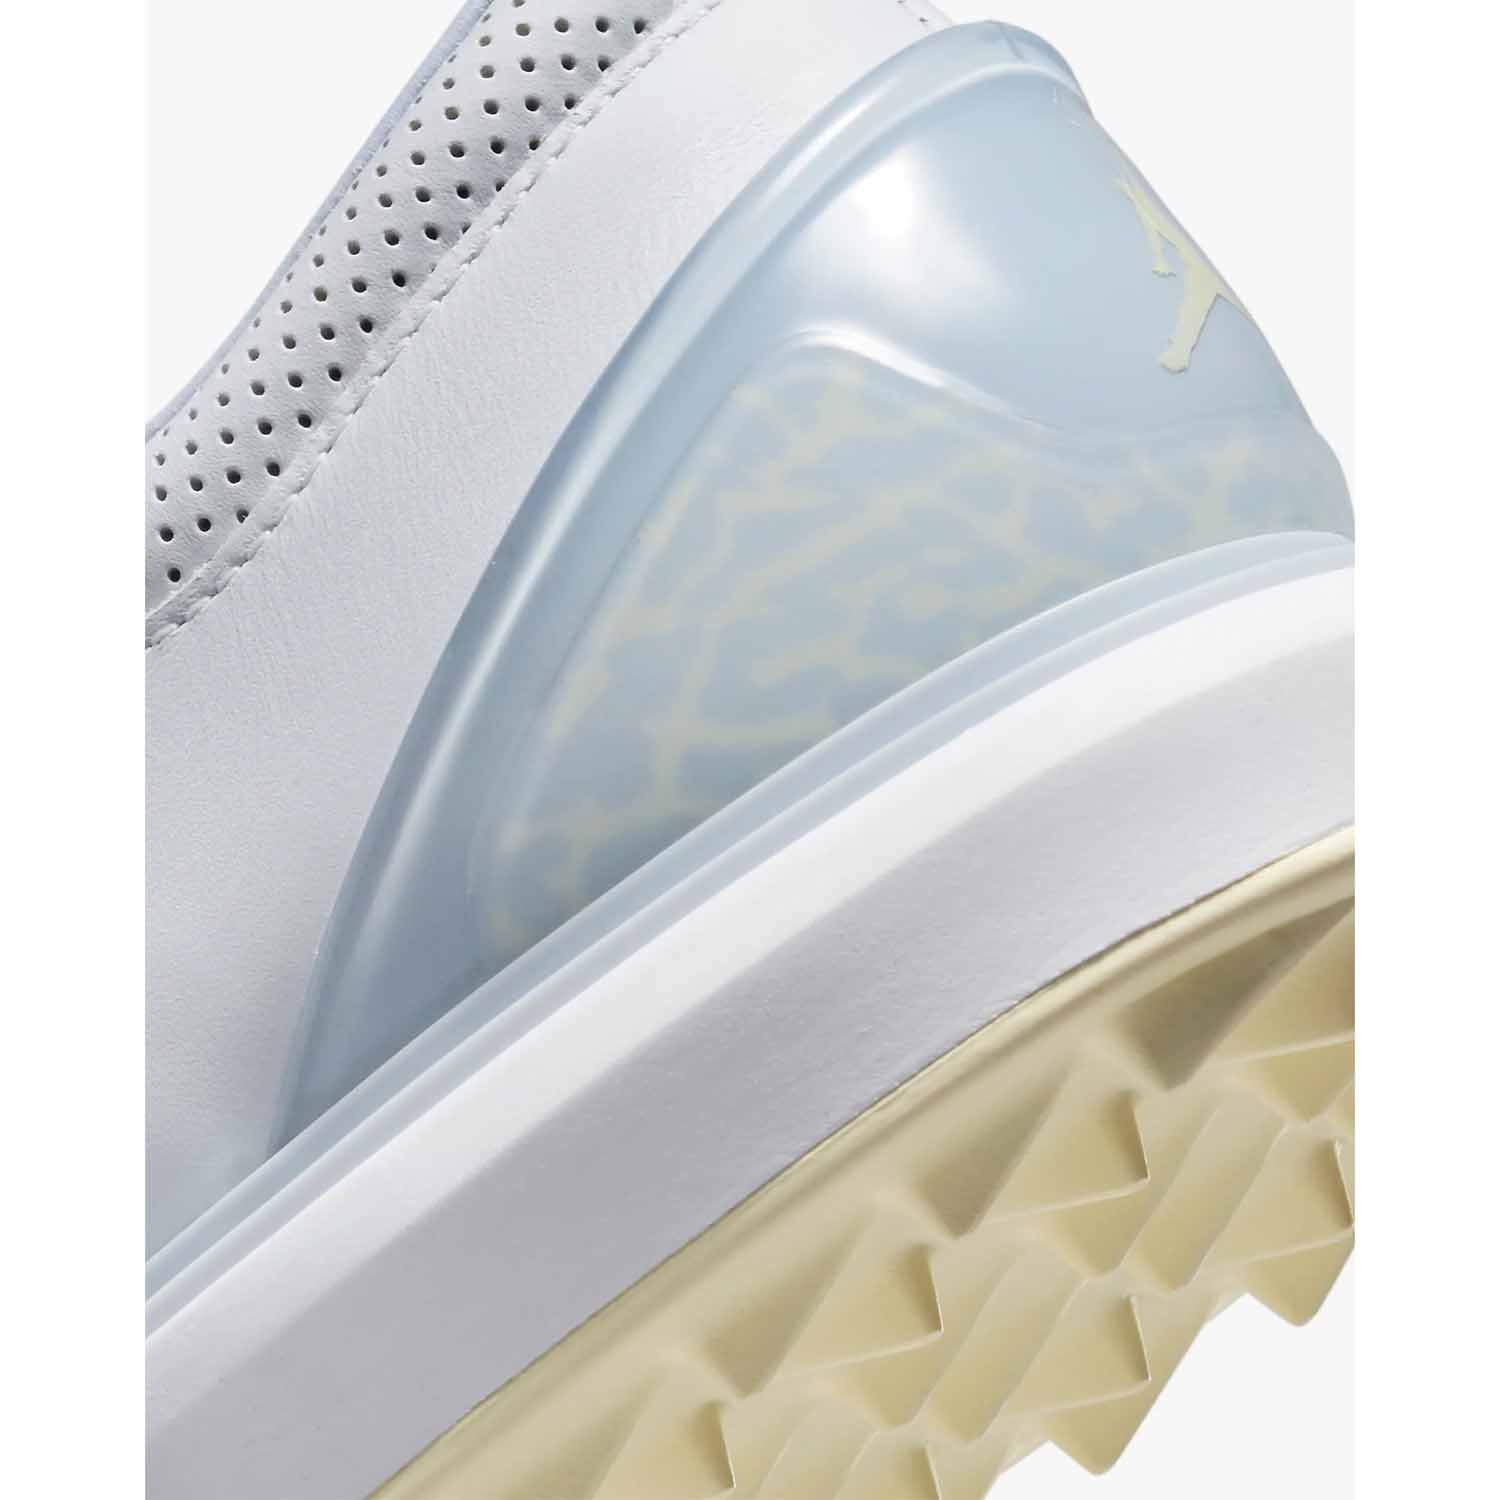 Nike Golf Air Jordan ADG 4 Spikeless Golf Shoes 